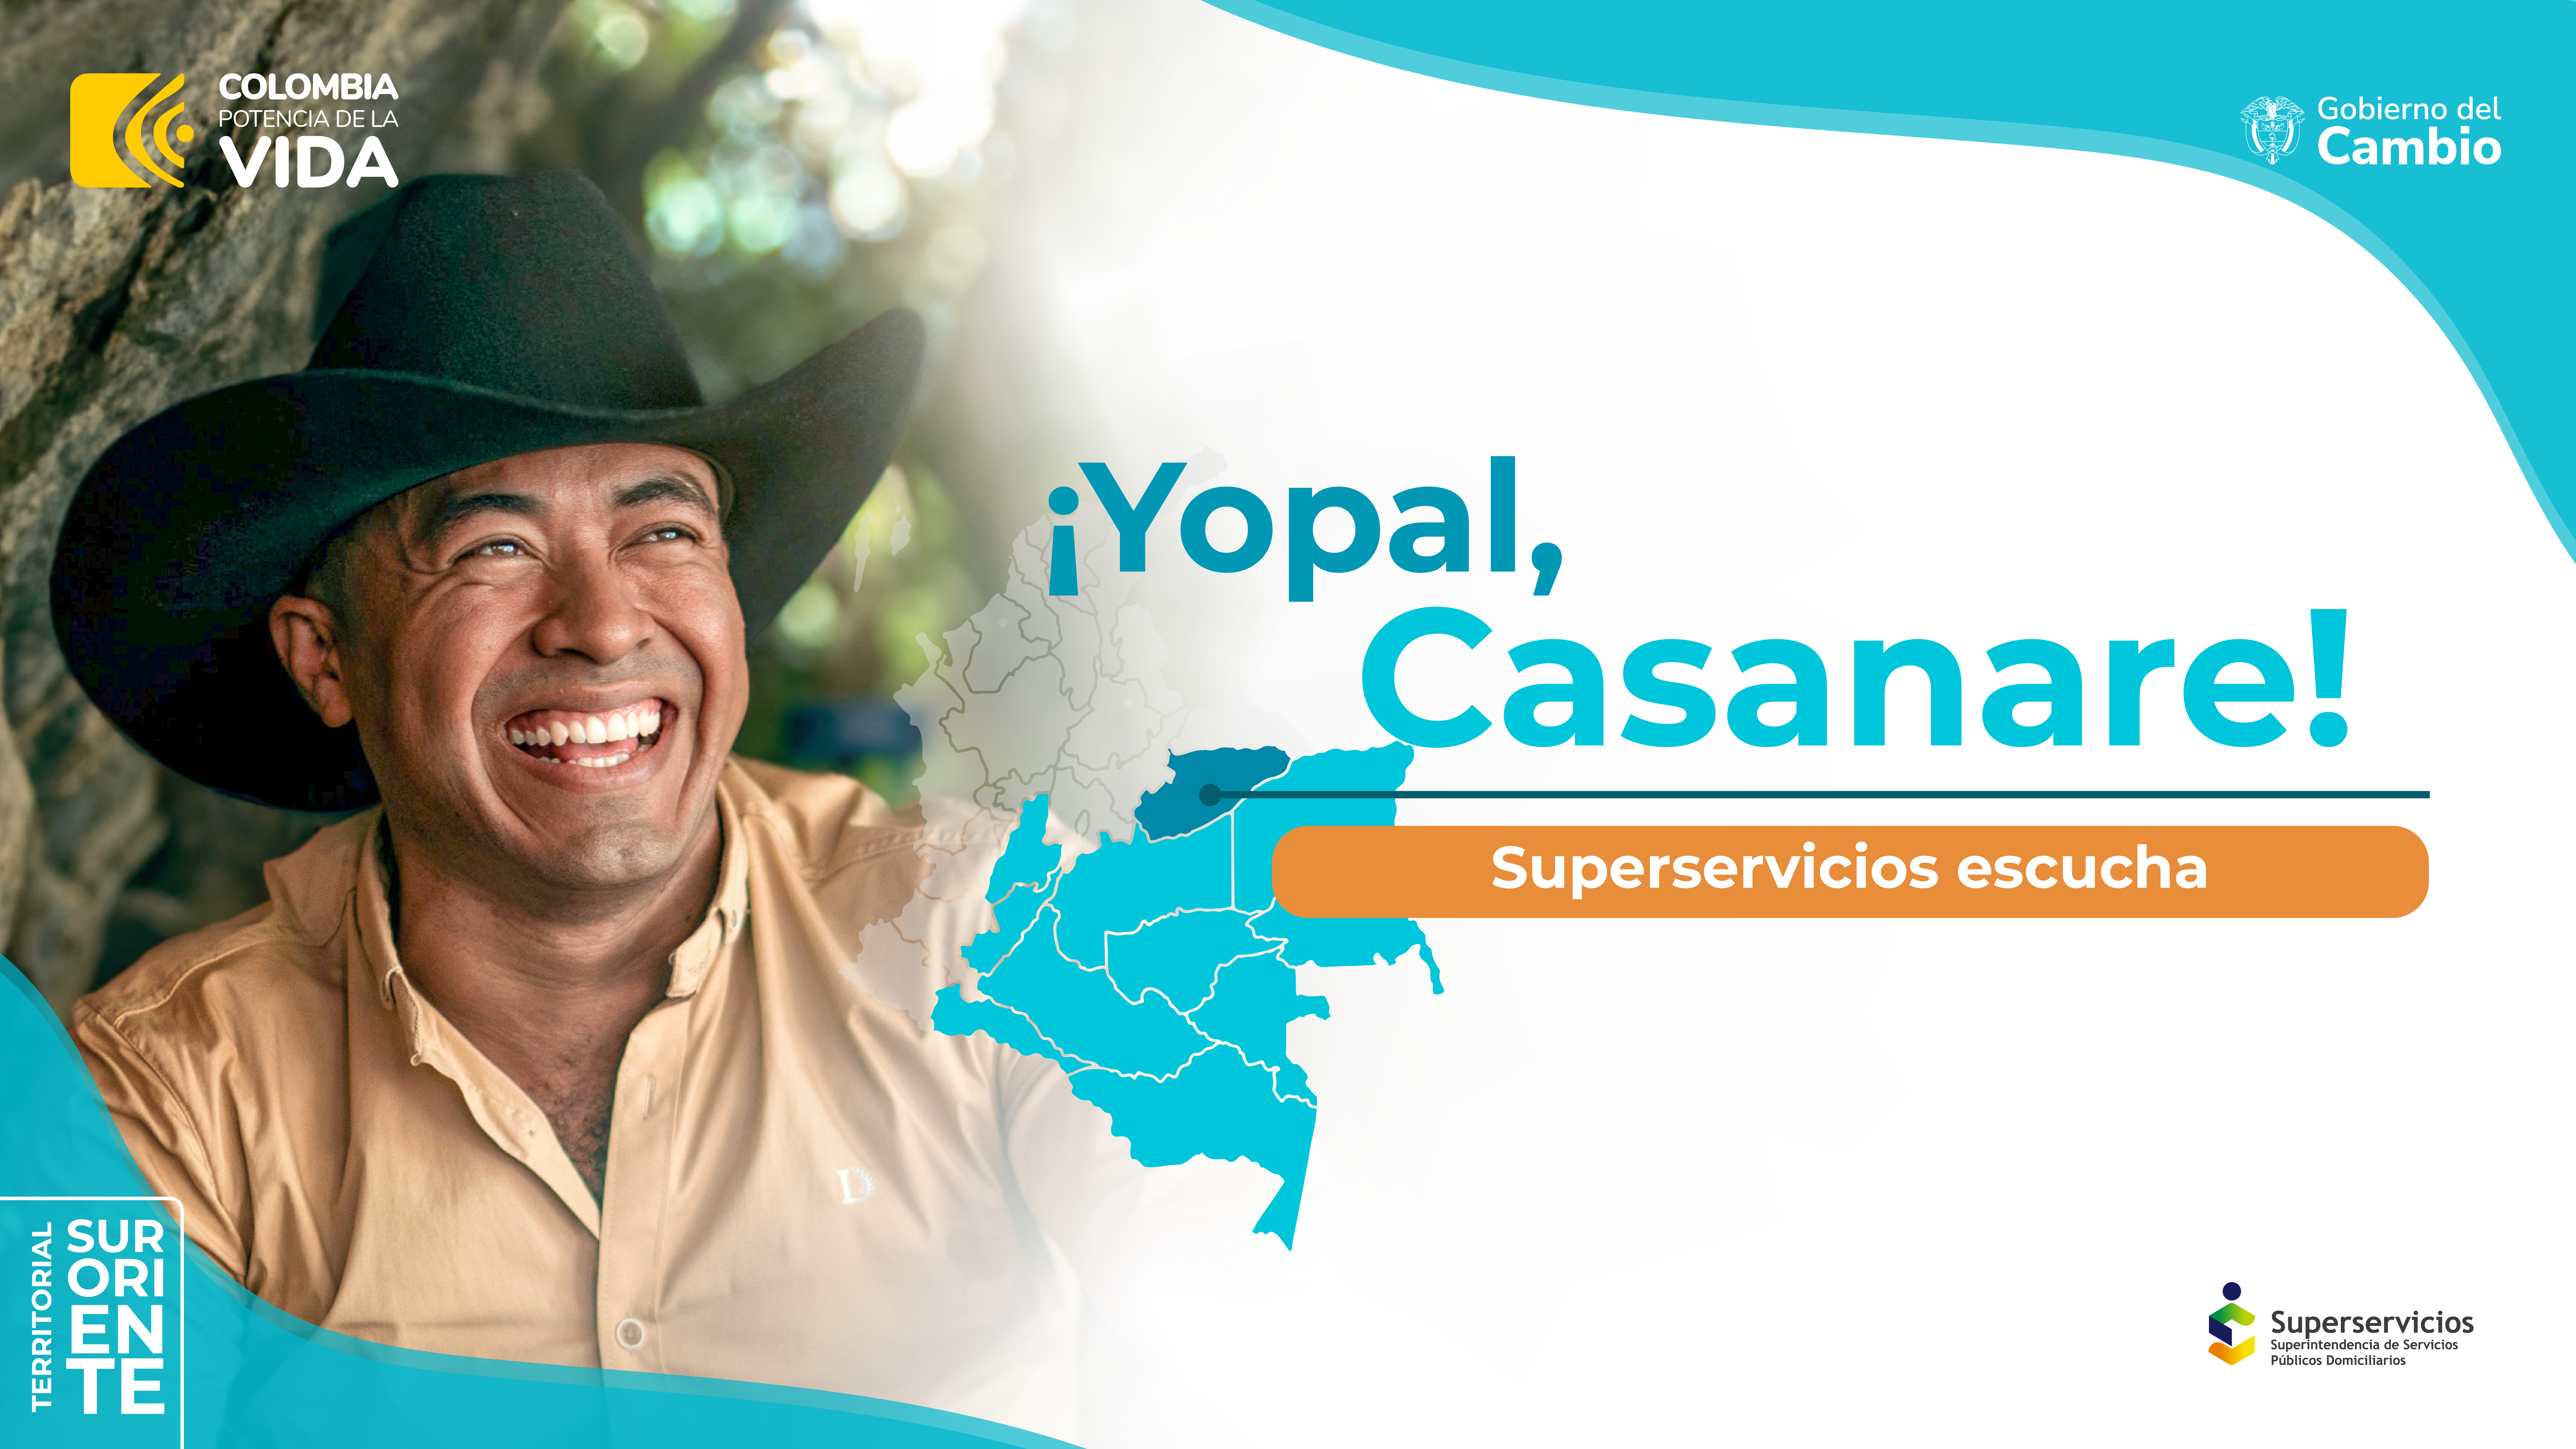 Superservicios escucha en Yopal, Casanare 
